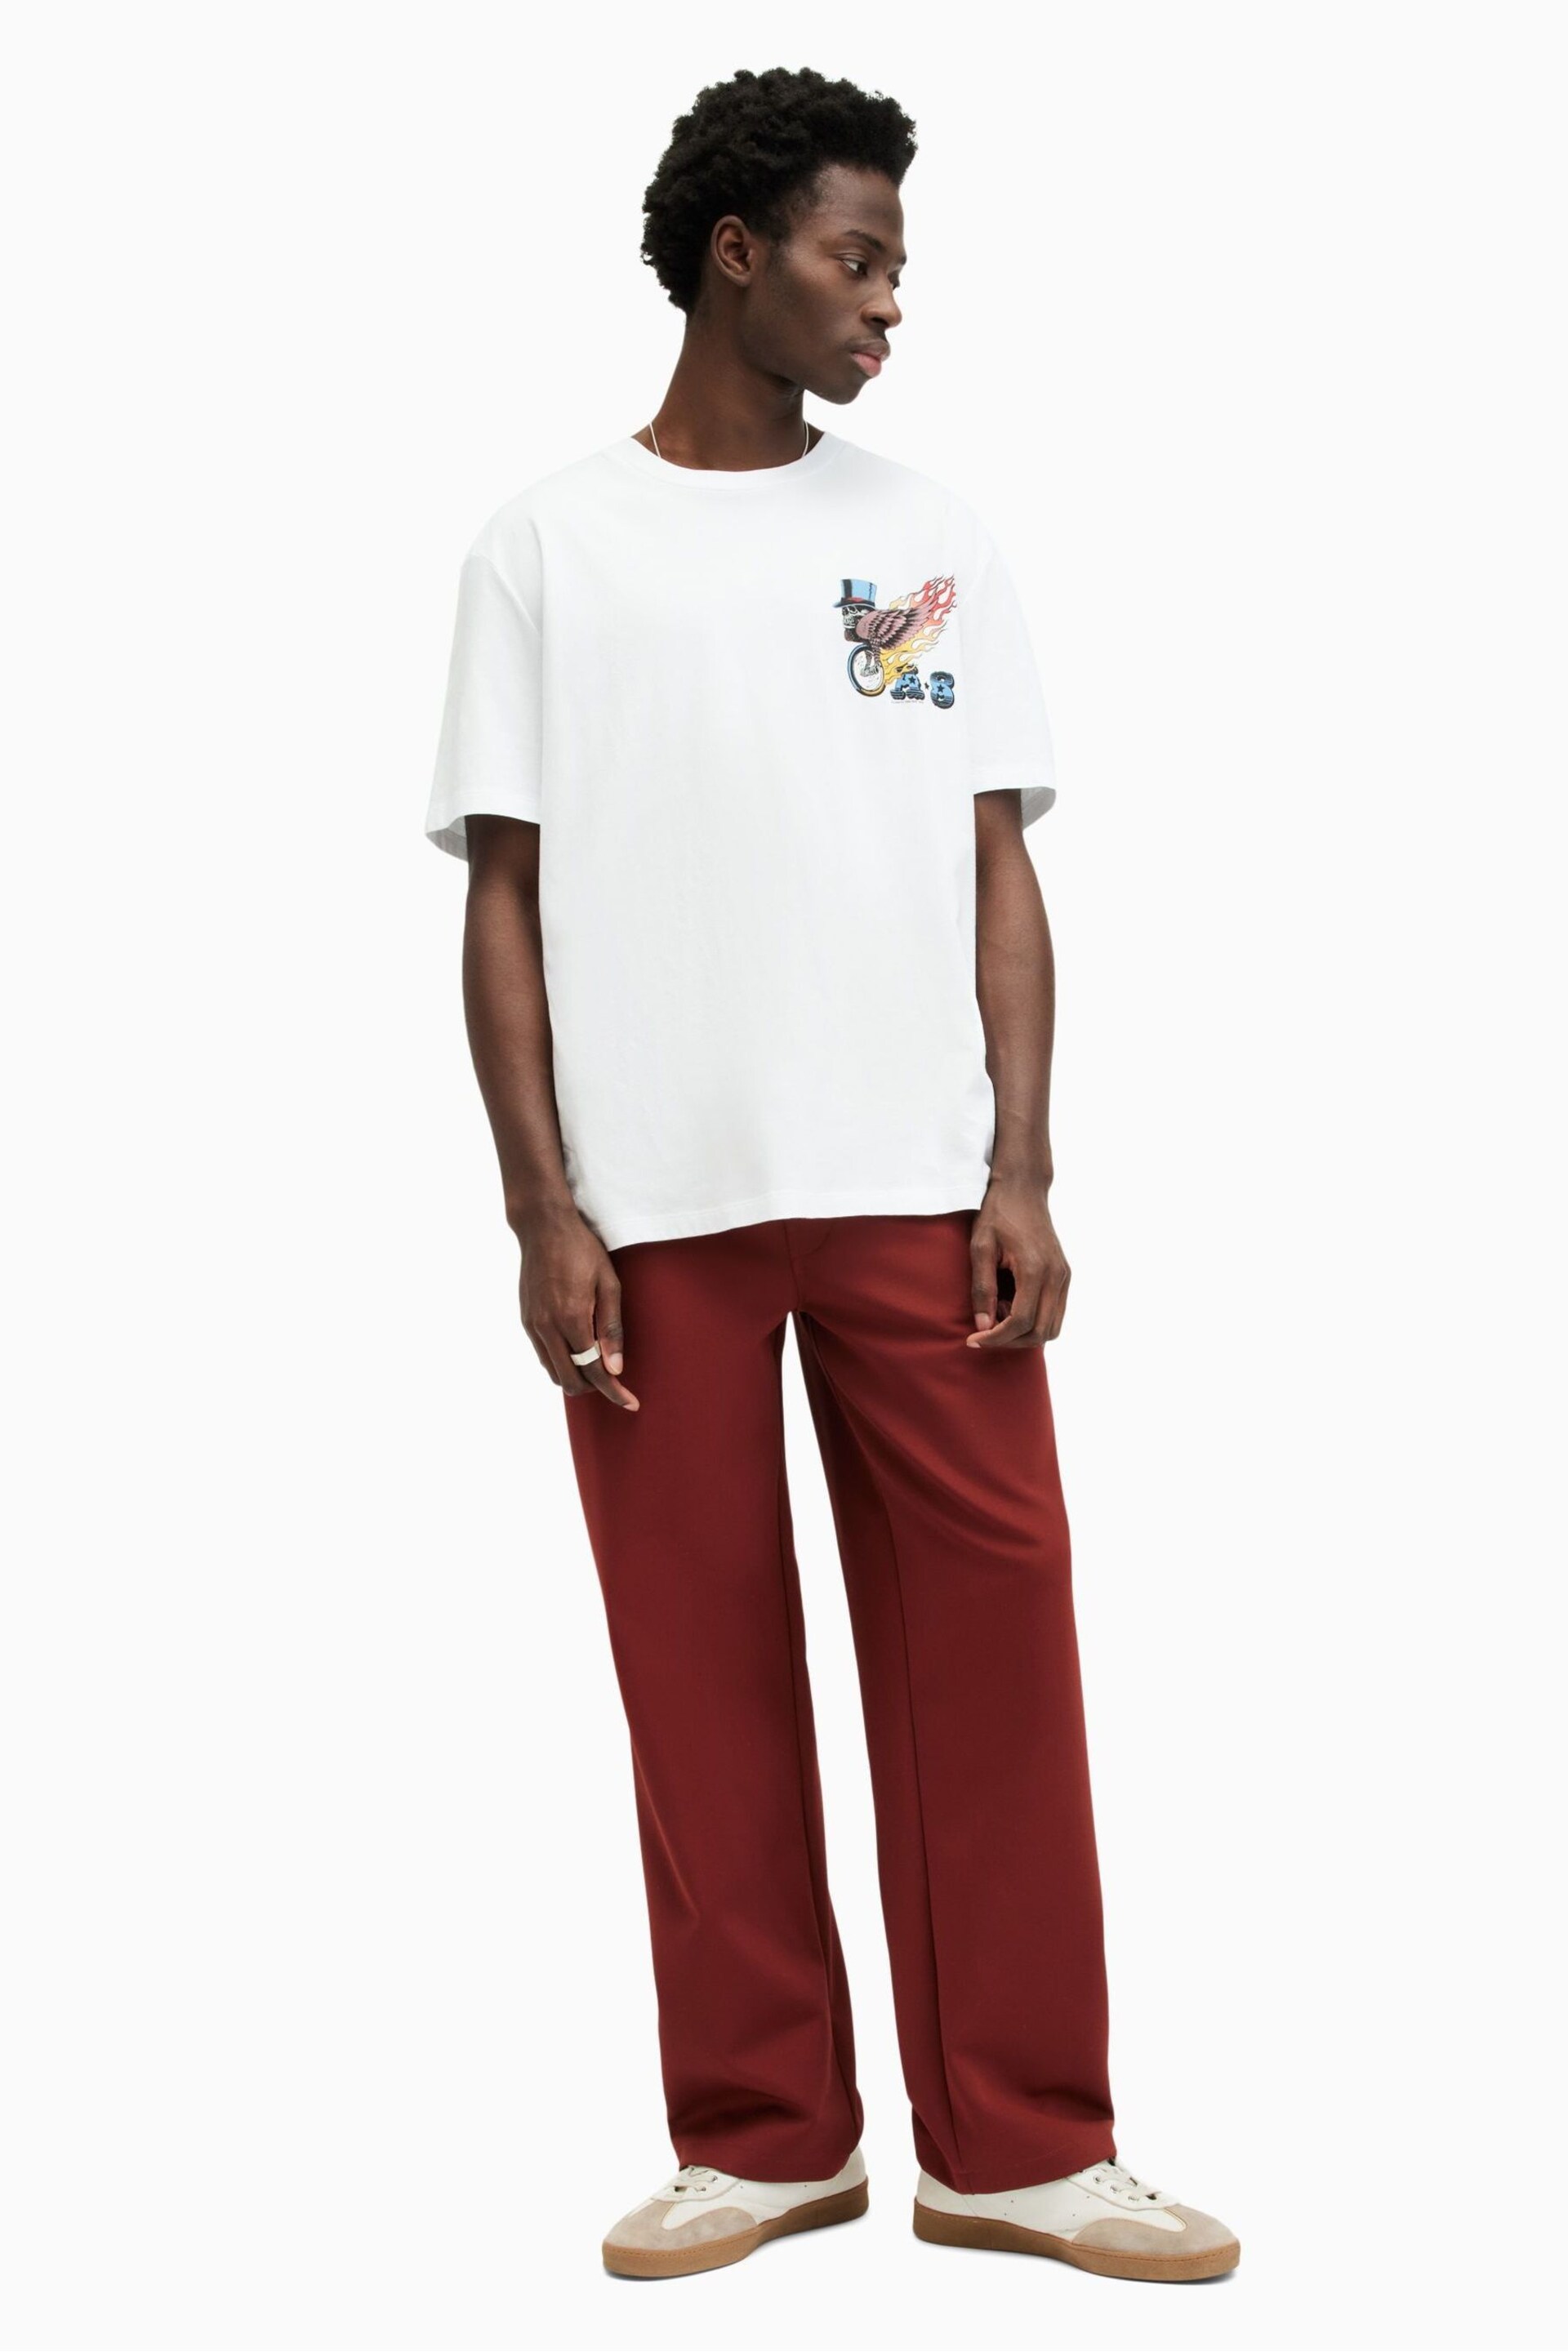 AllSaints White Roller Short Sleeve Crew Neck T-Shirt - Image 1 of 7